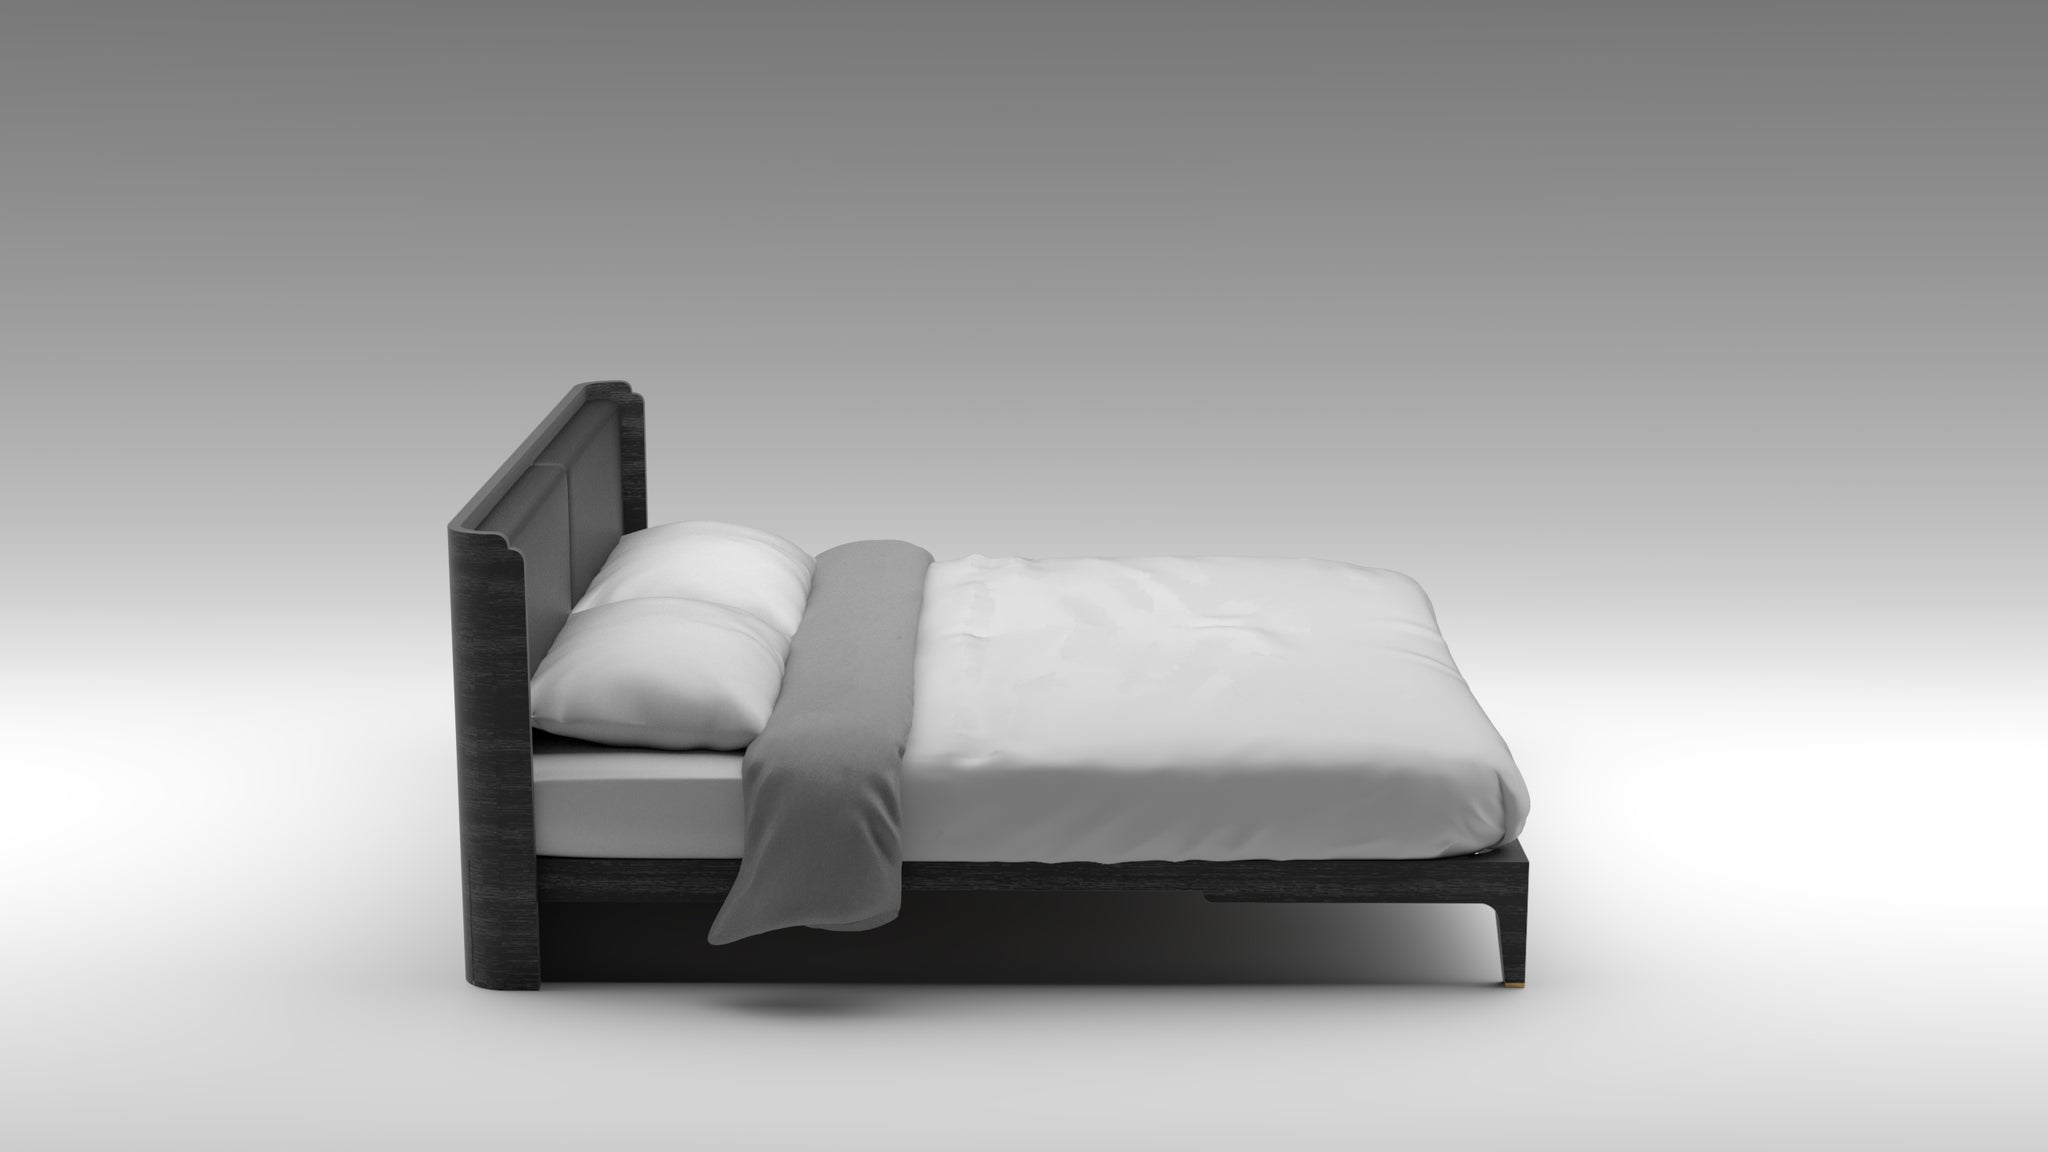 Anthracite bed frame, black bed frame, oak bed frame, designer bed frame, minimalist bed frame, akar bed guimar, simplistic design, luxury bed frame